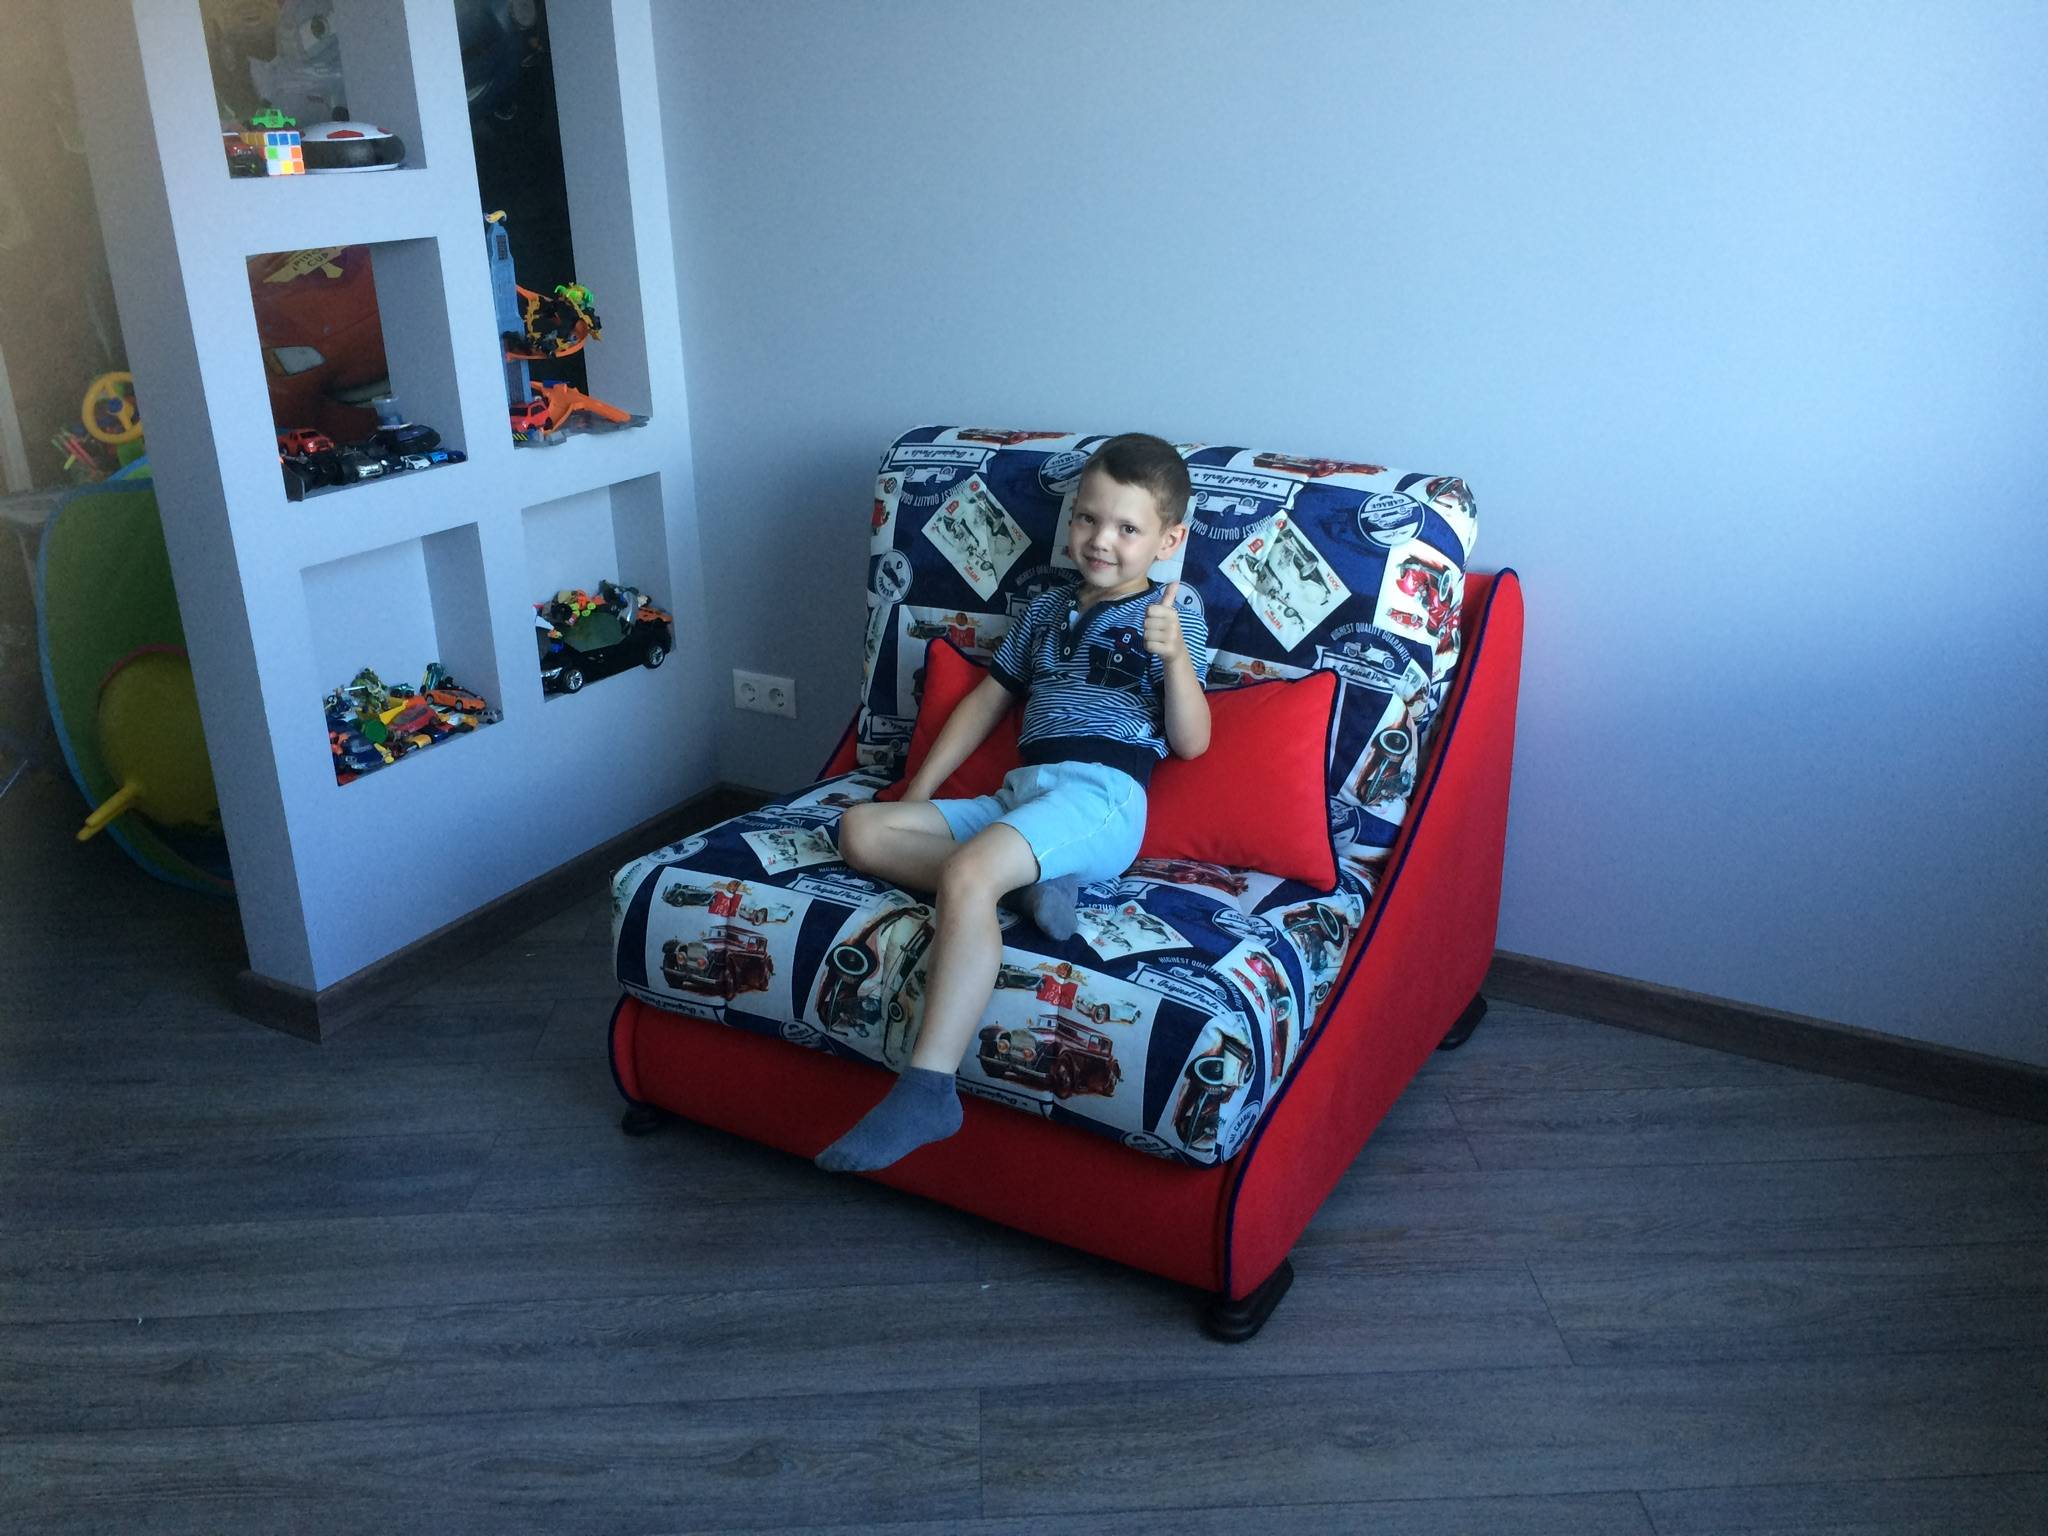 Кресло кровать для детей: плюсы и минусы (главное при выборе)